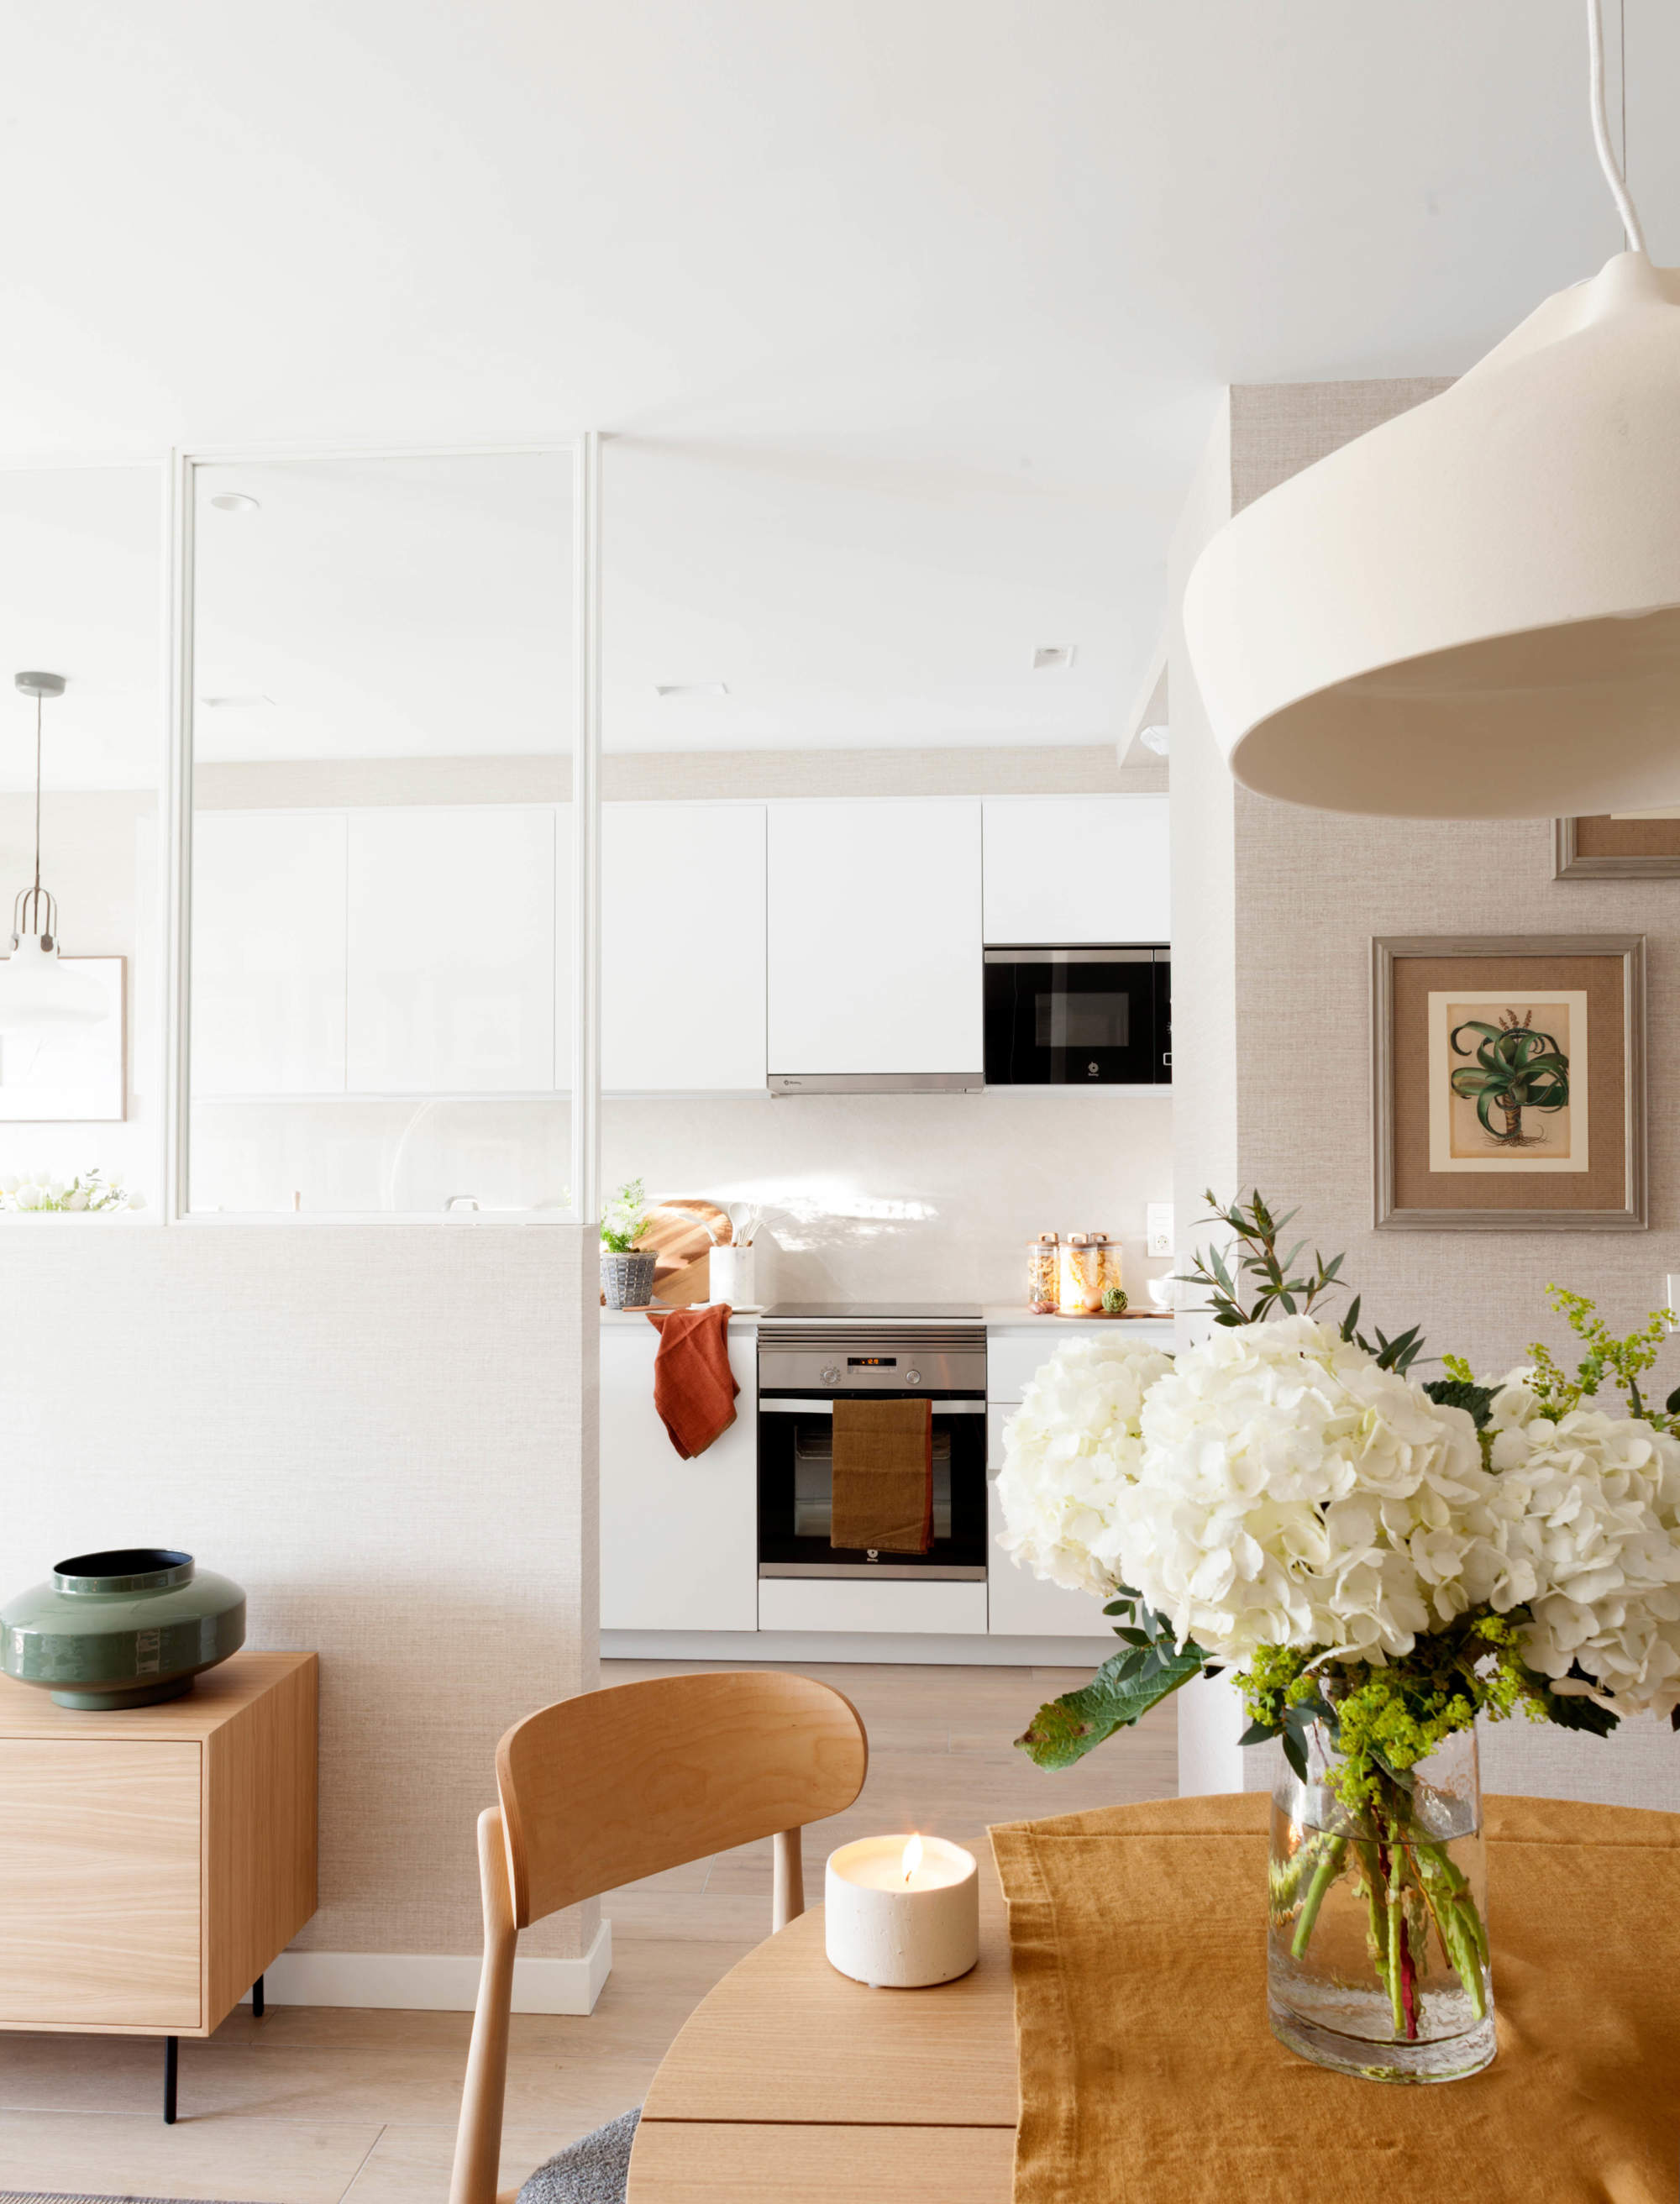 Un marco acristalado actúa como separación entre la cocina y el salón, ampliando visualmente toda la estancia.